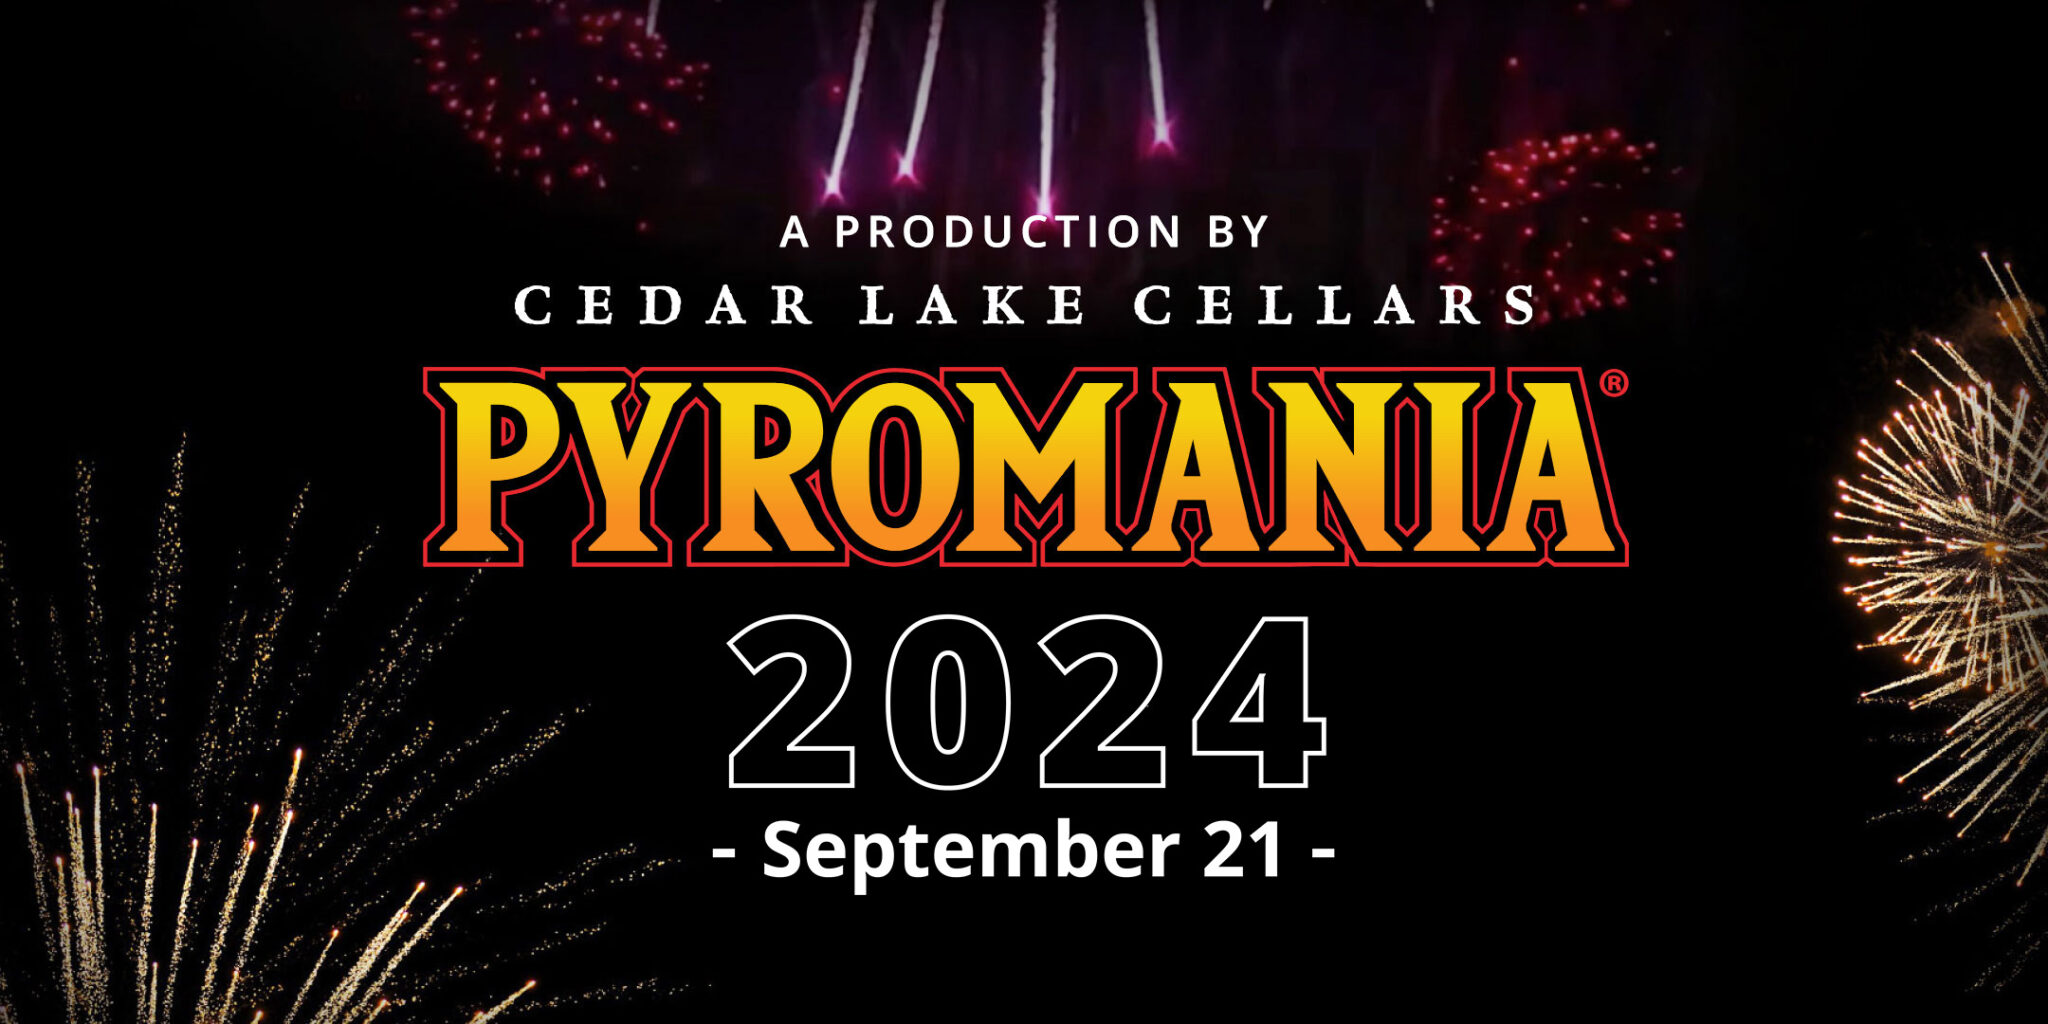 Pyromania 2024 Cedar Lake Cellars